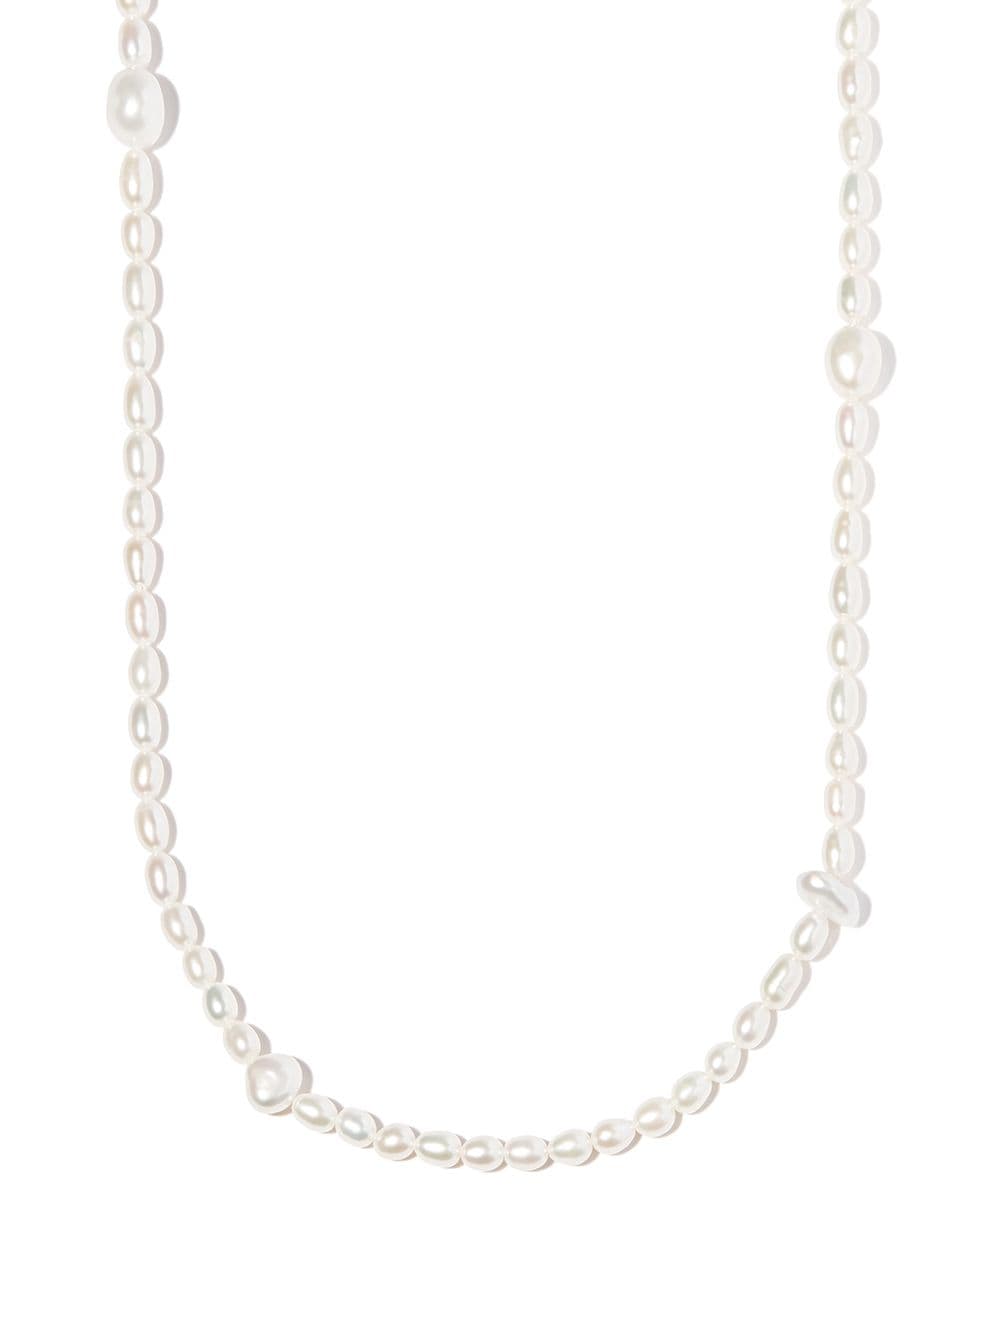 Martini pearl necklace